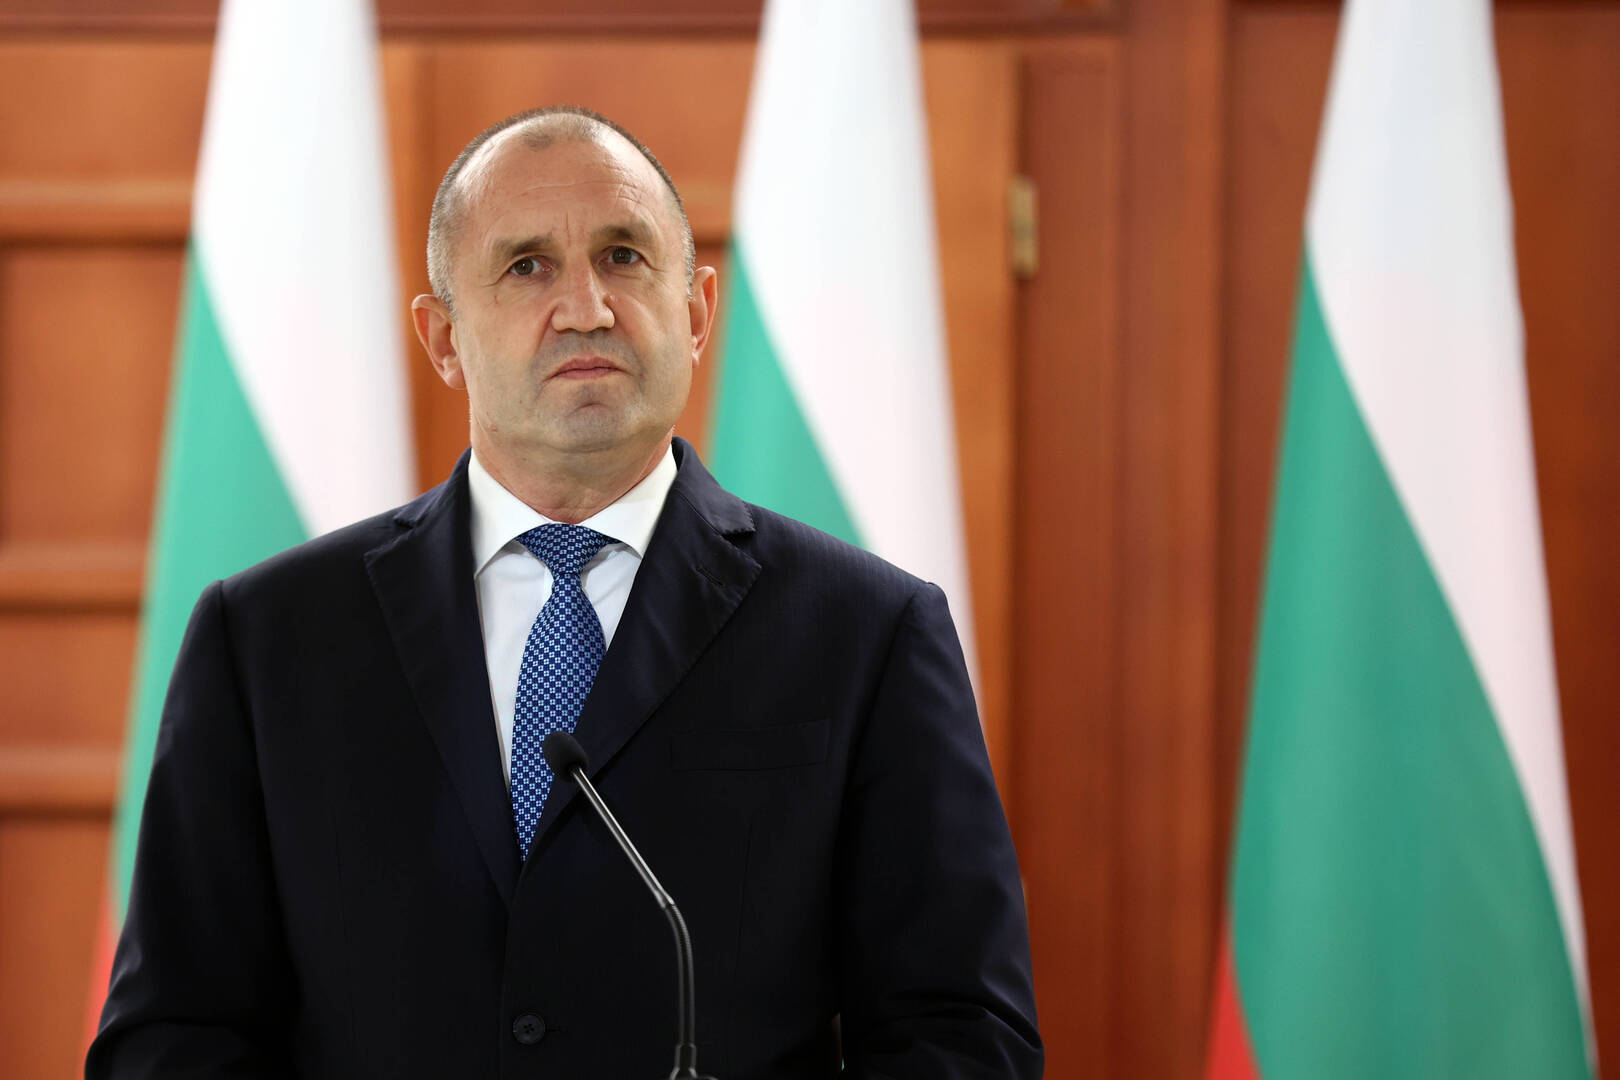 رئيس بلغاريا يأمل في حل دبلوماسي للنزاع في أوكرانيا